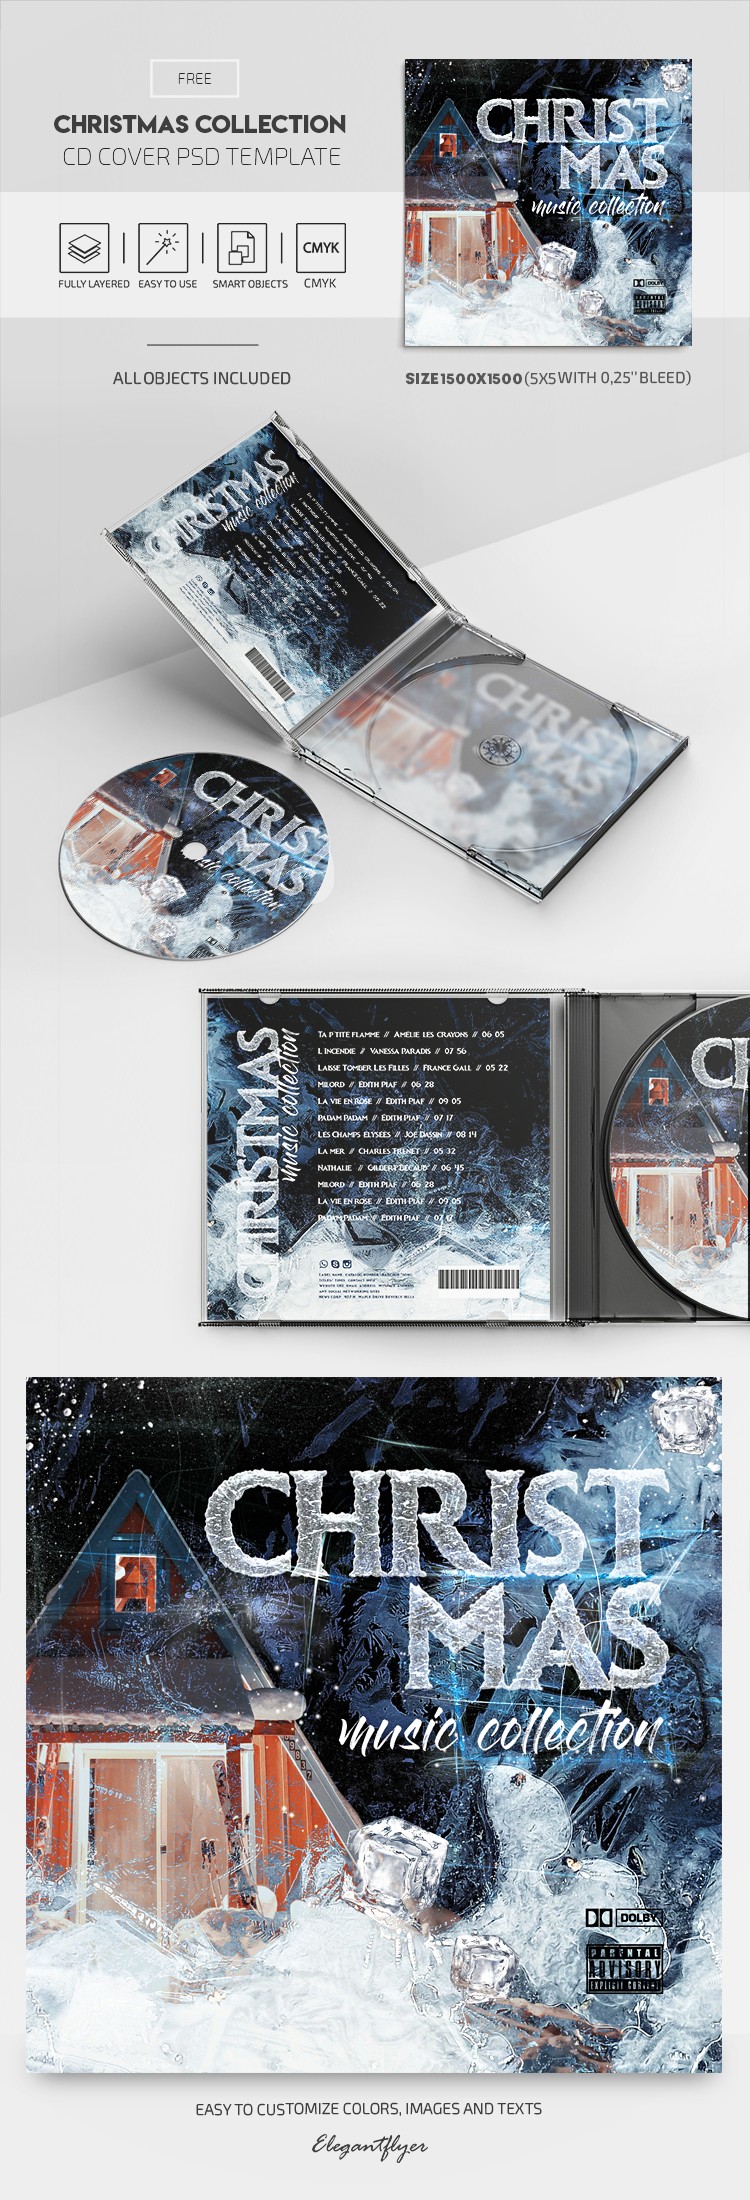 Portada del CD de la Colección de Navidad by ElegantFlyer